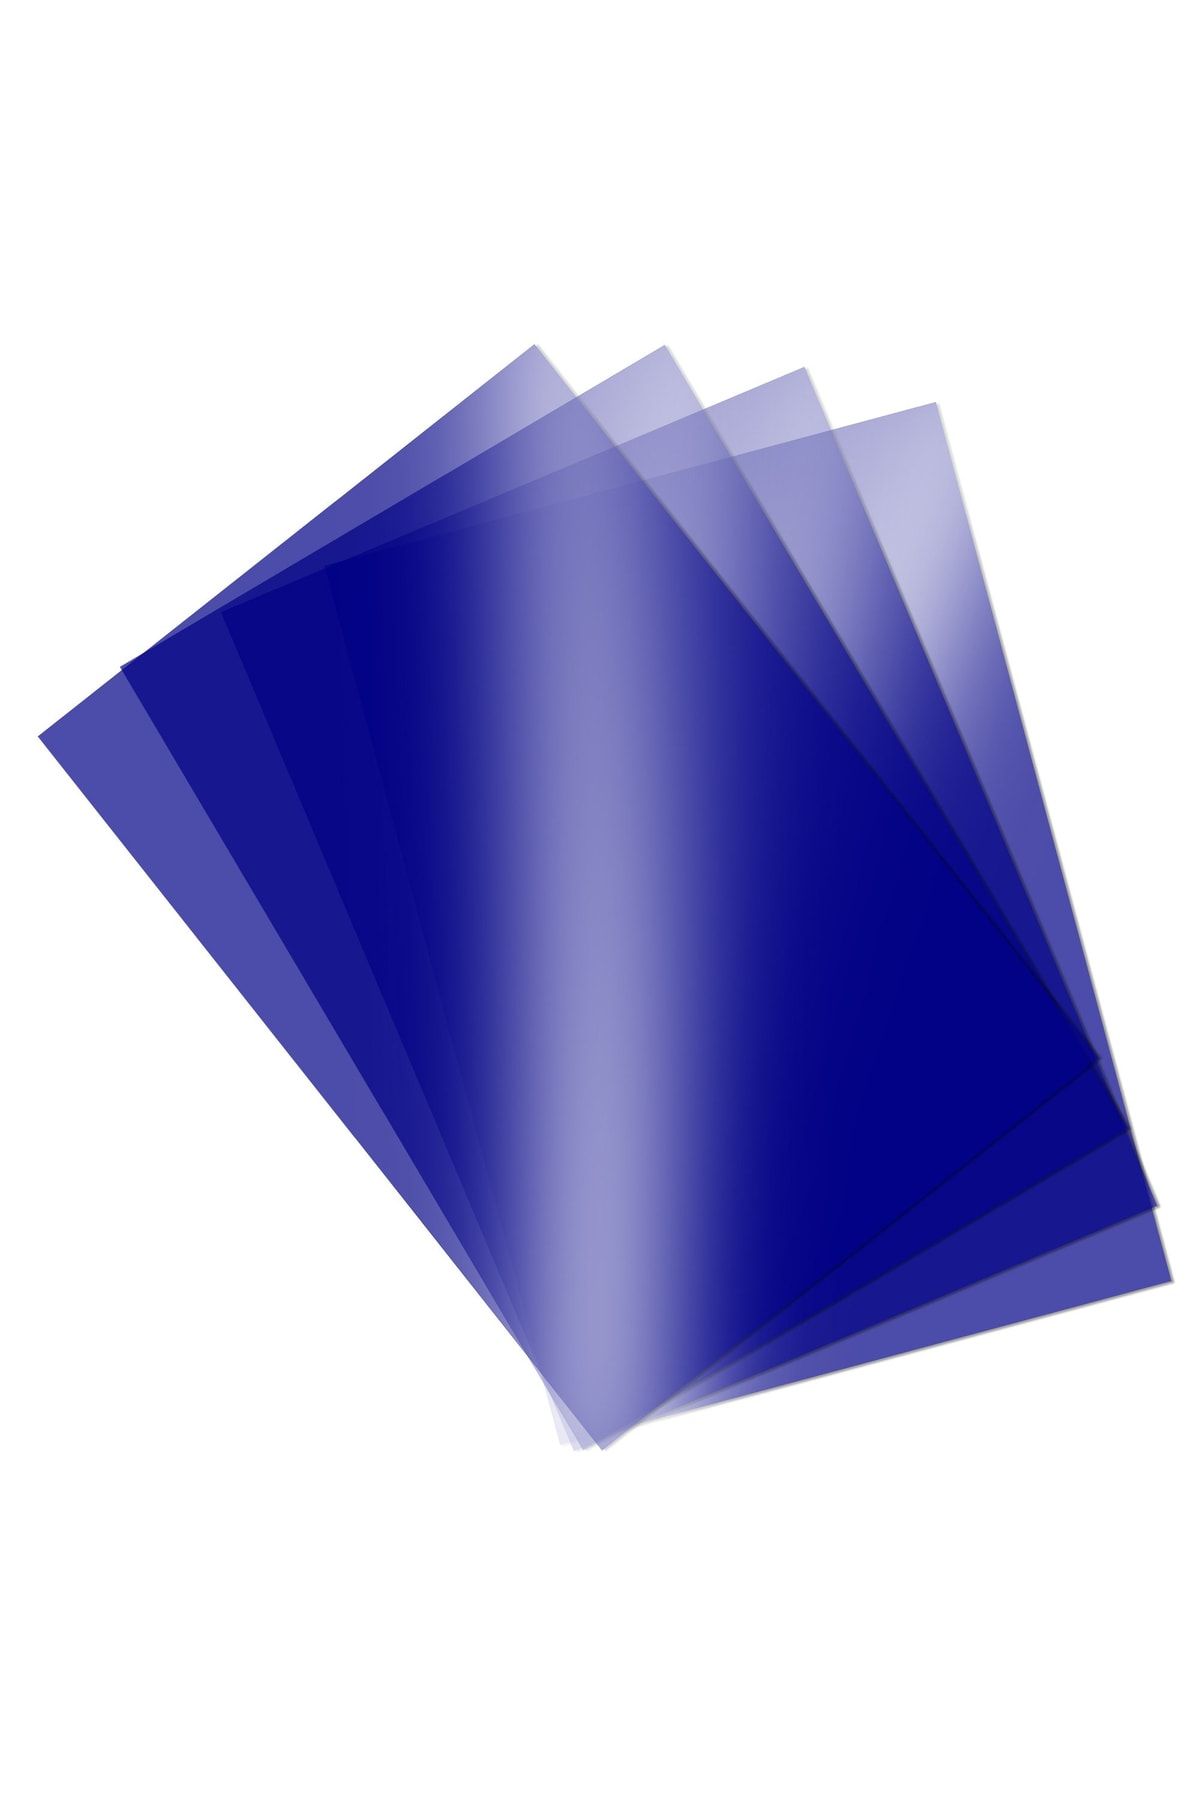 Ümraniye Hobi Sanat Renkli Asetat Kağıdı Pvc 250 Micron A4 Mavi 5'li